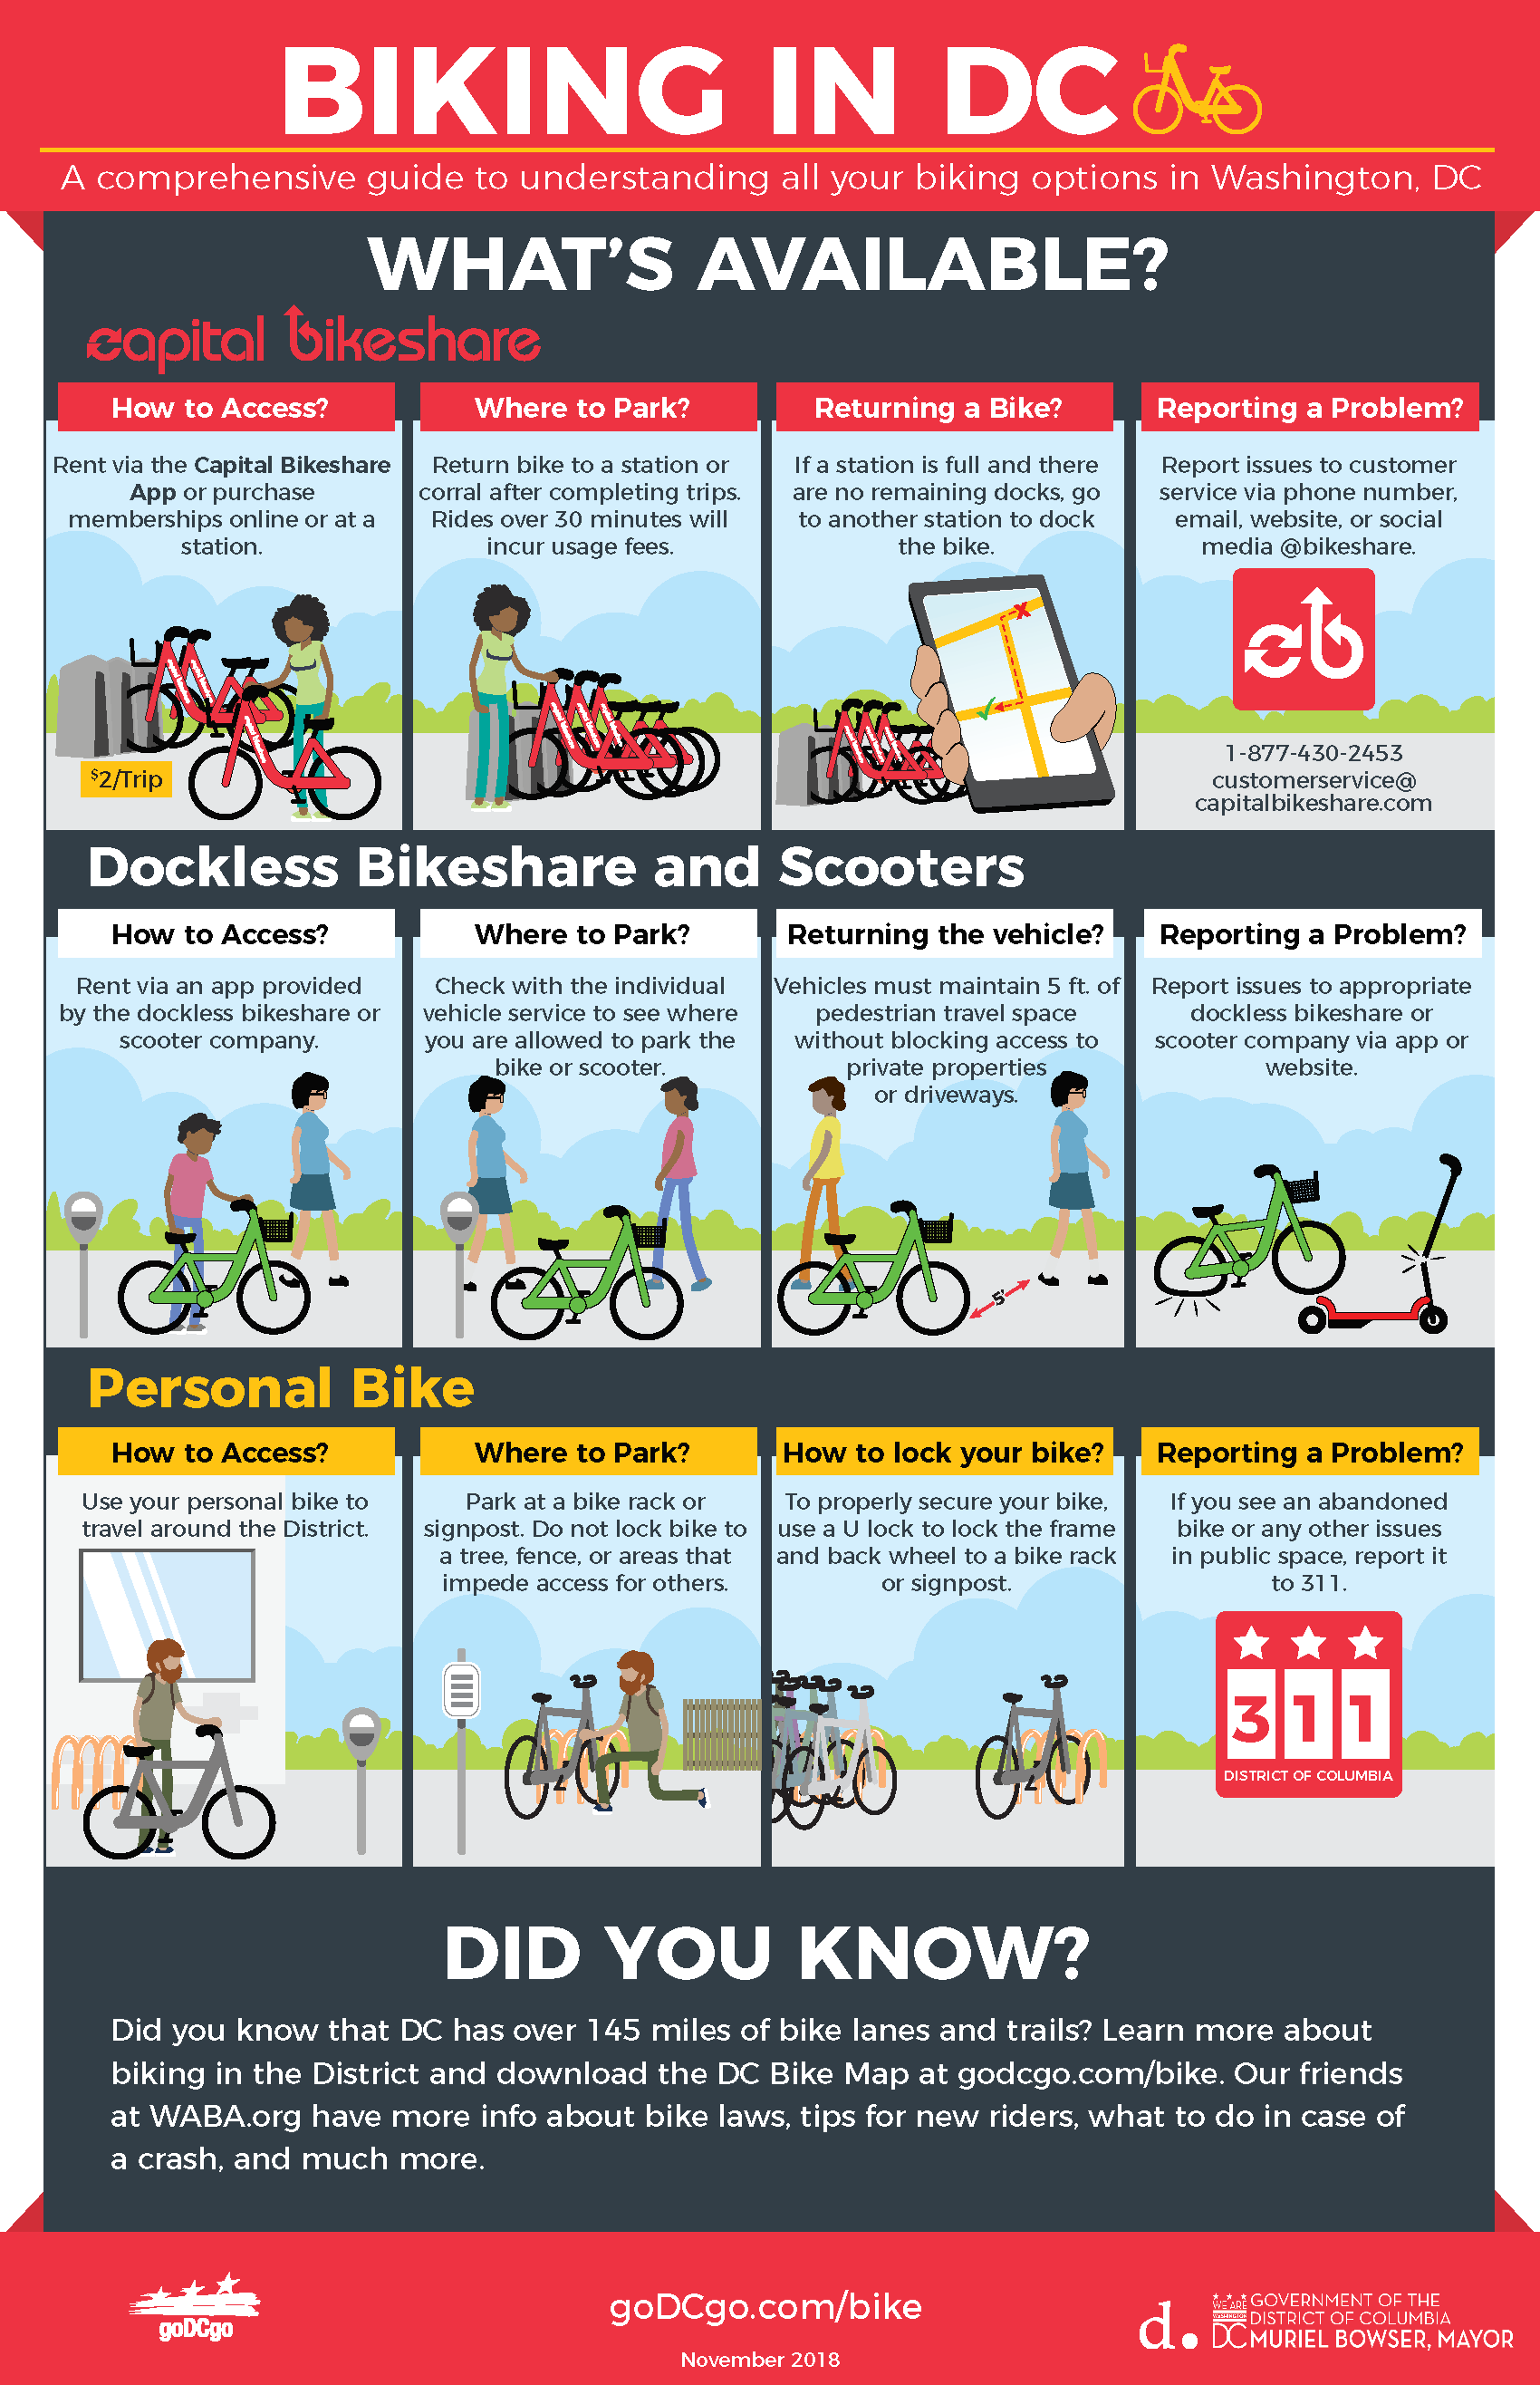 GDG_infographic_bikeshare_web_110518[1]